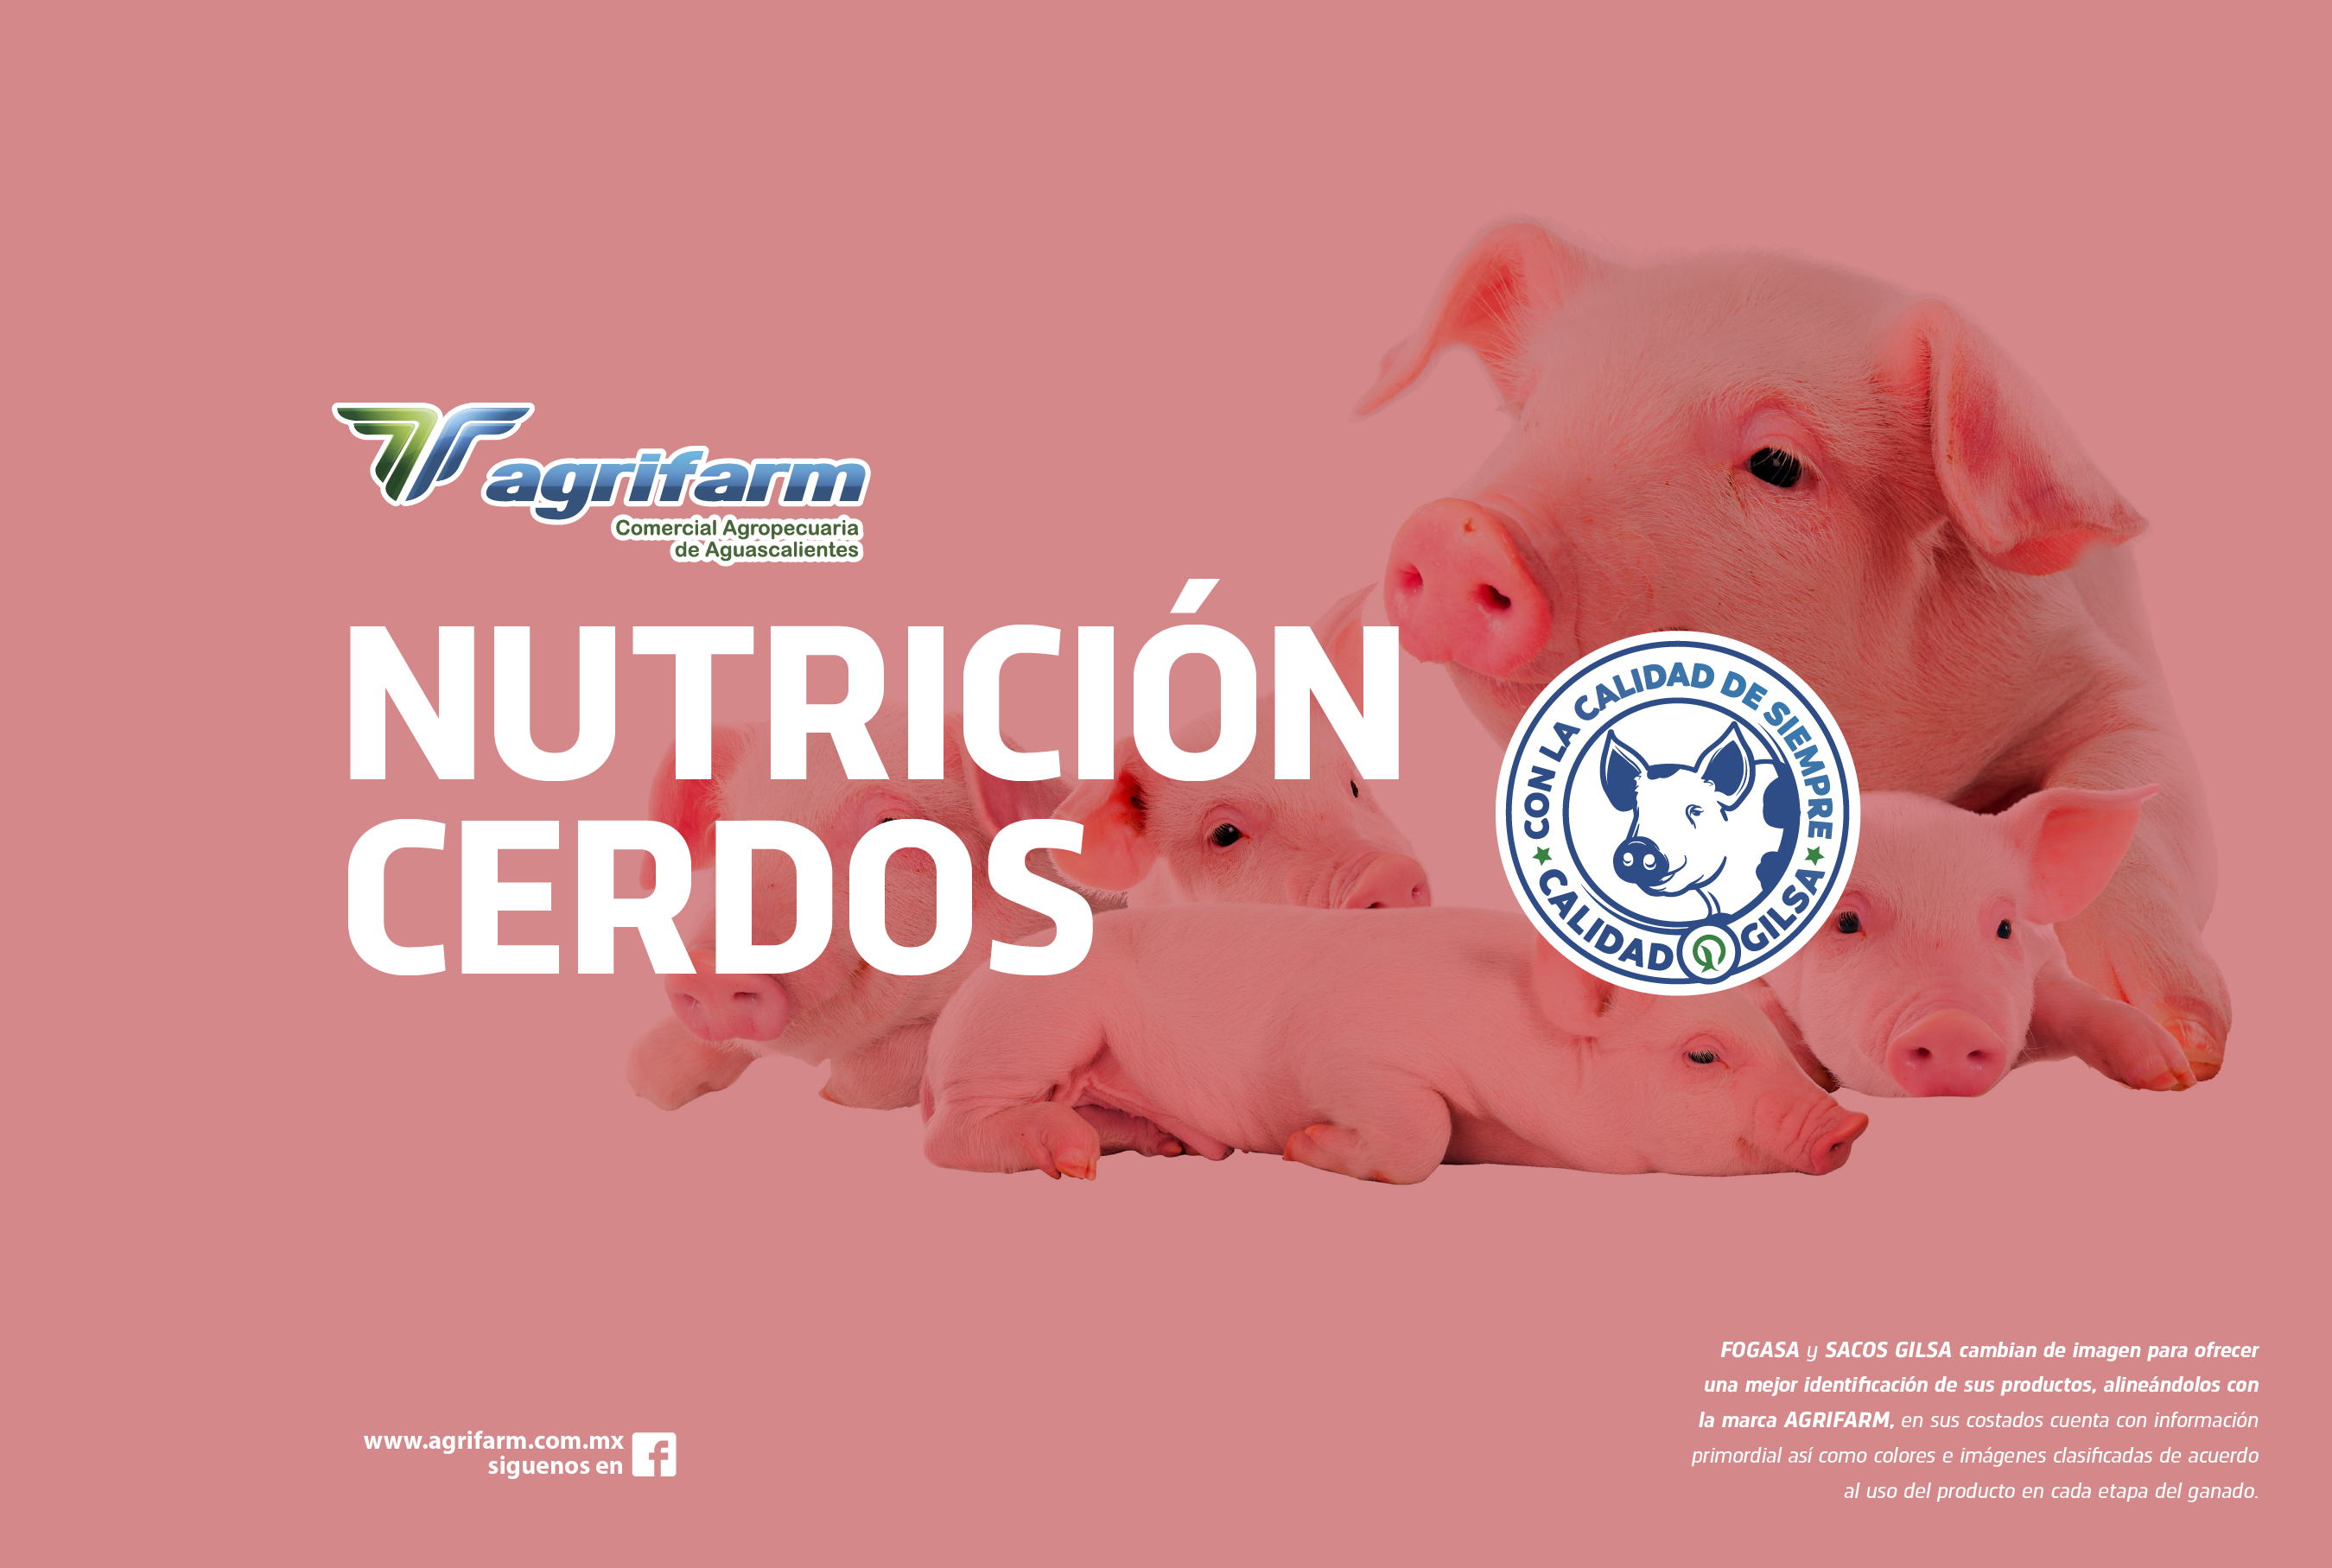 Alimento 100% balanceado para cerdos. Protege y fortalece el sistema inmunológico, para una buena digestión, potabilidad y carne magra